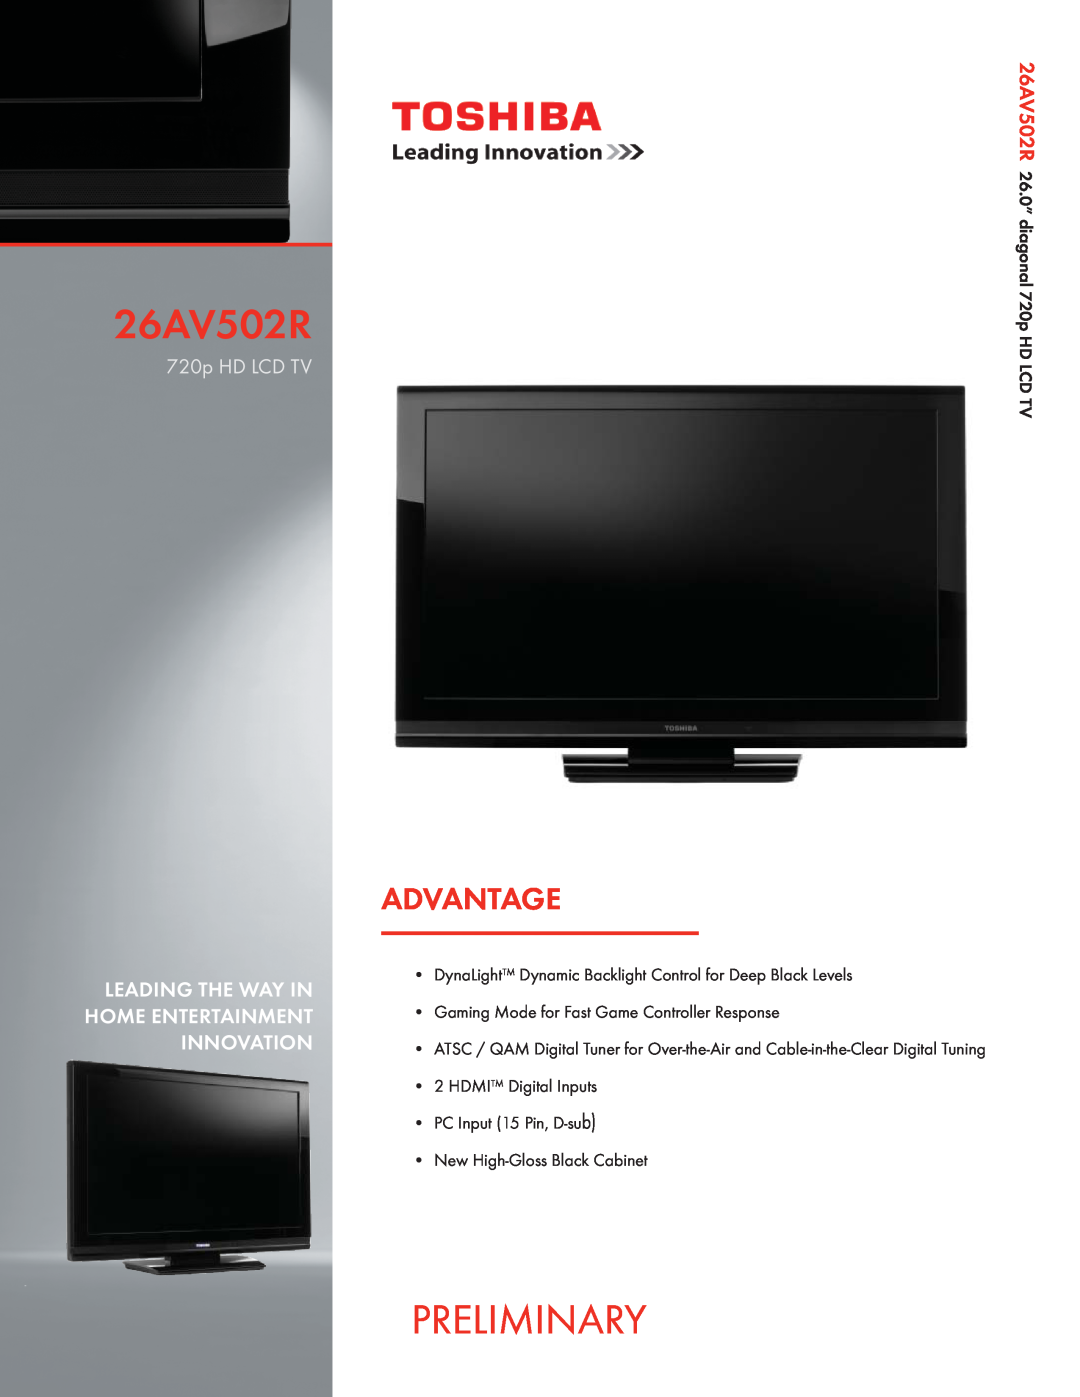 Toshiba manual Preliminary, Advantage, 26AV502U26AV502R, 720p HD LCD TV with CineSpeed 